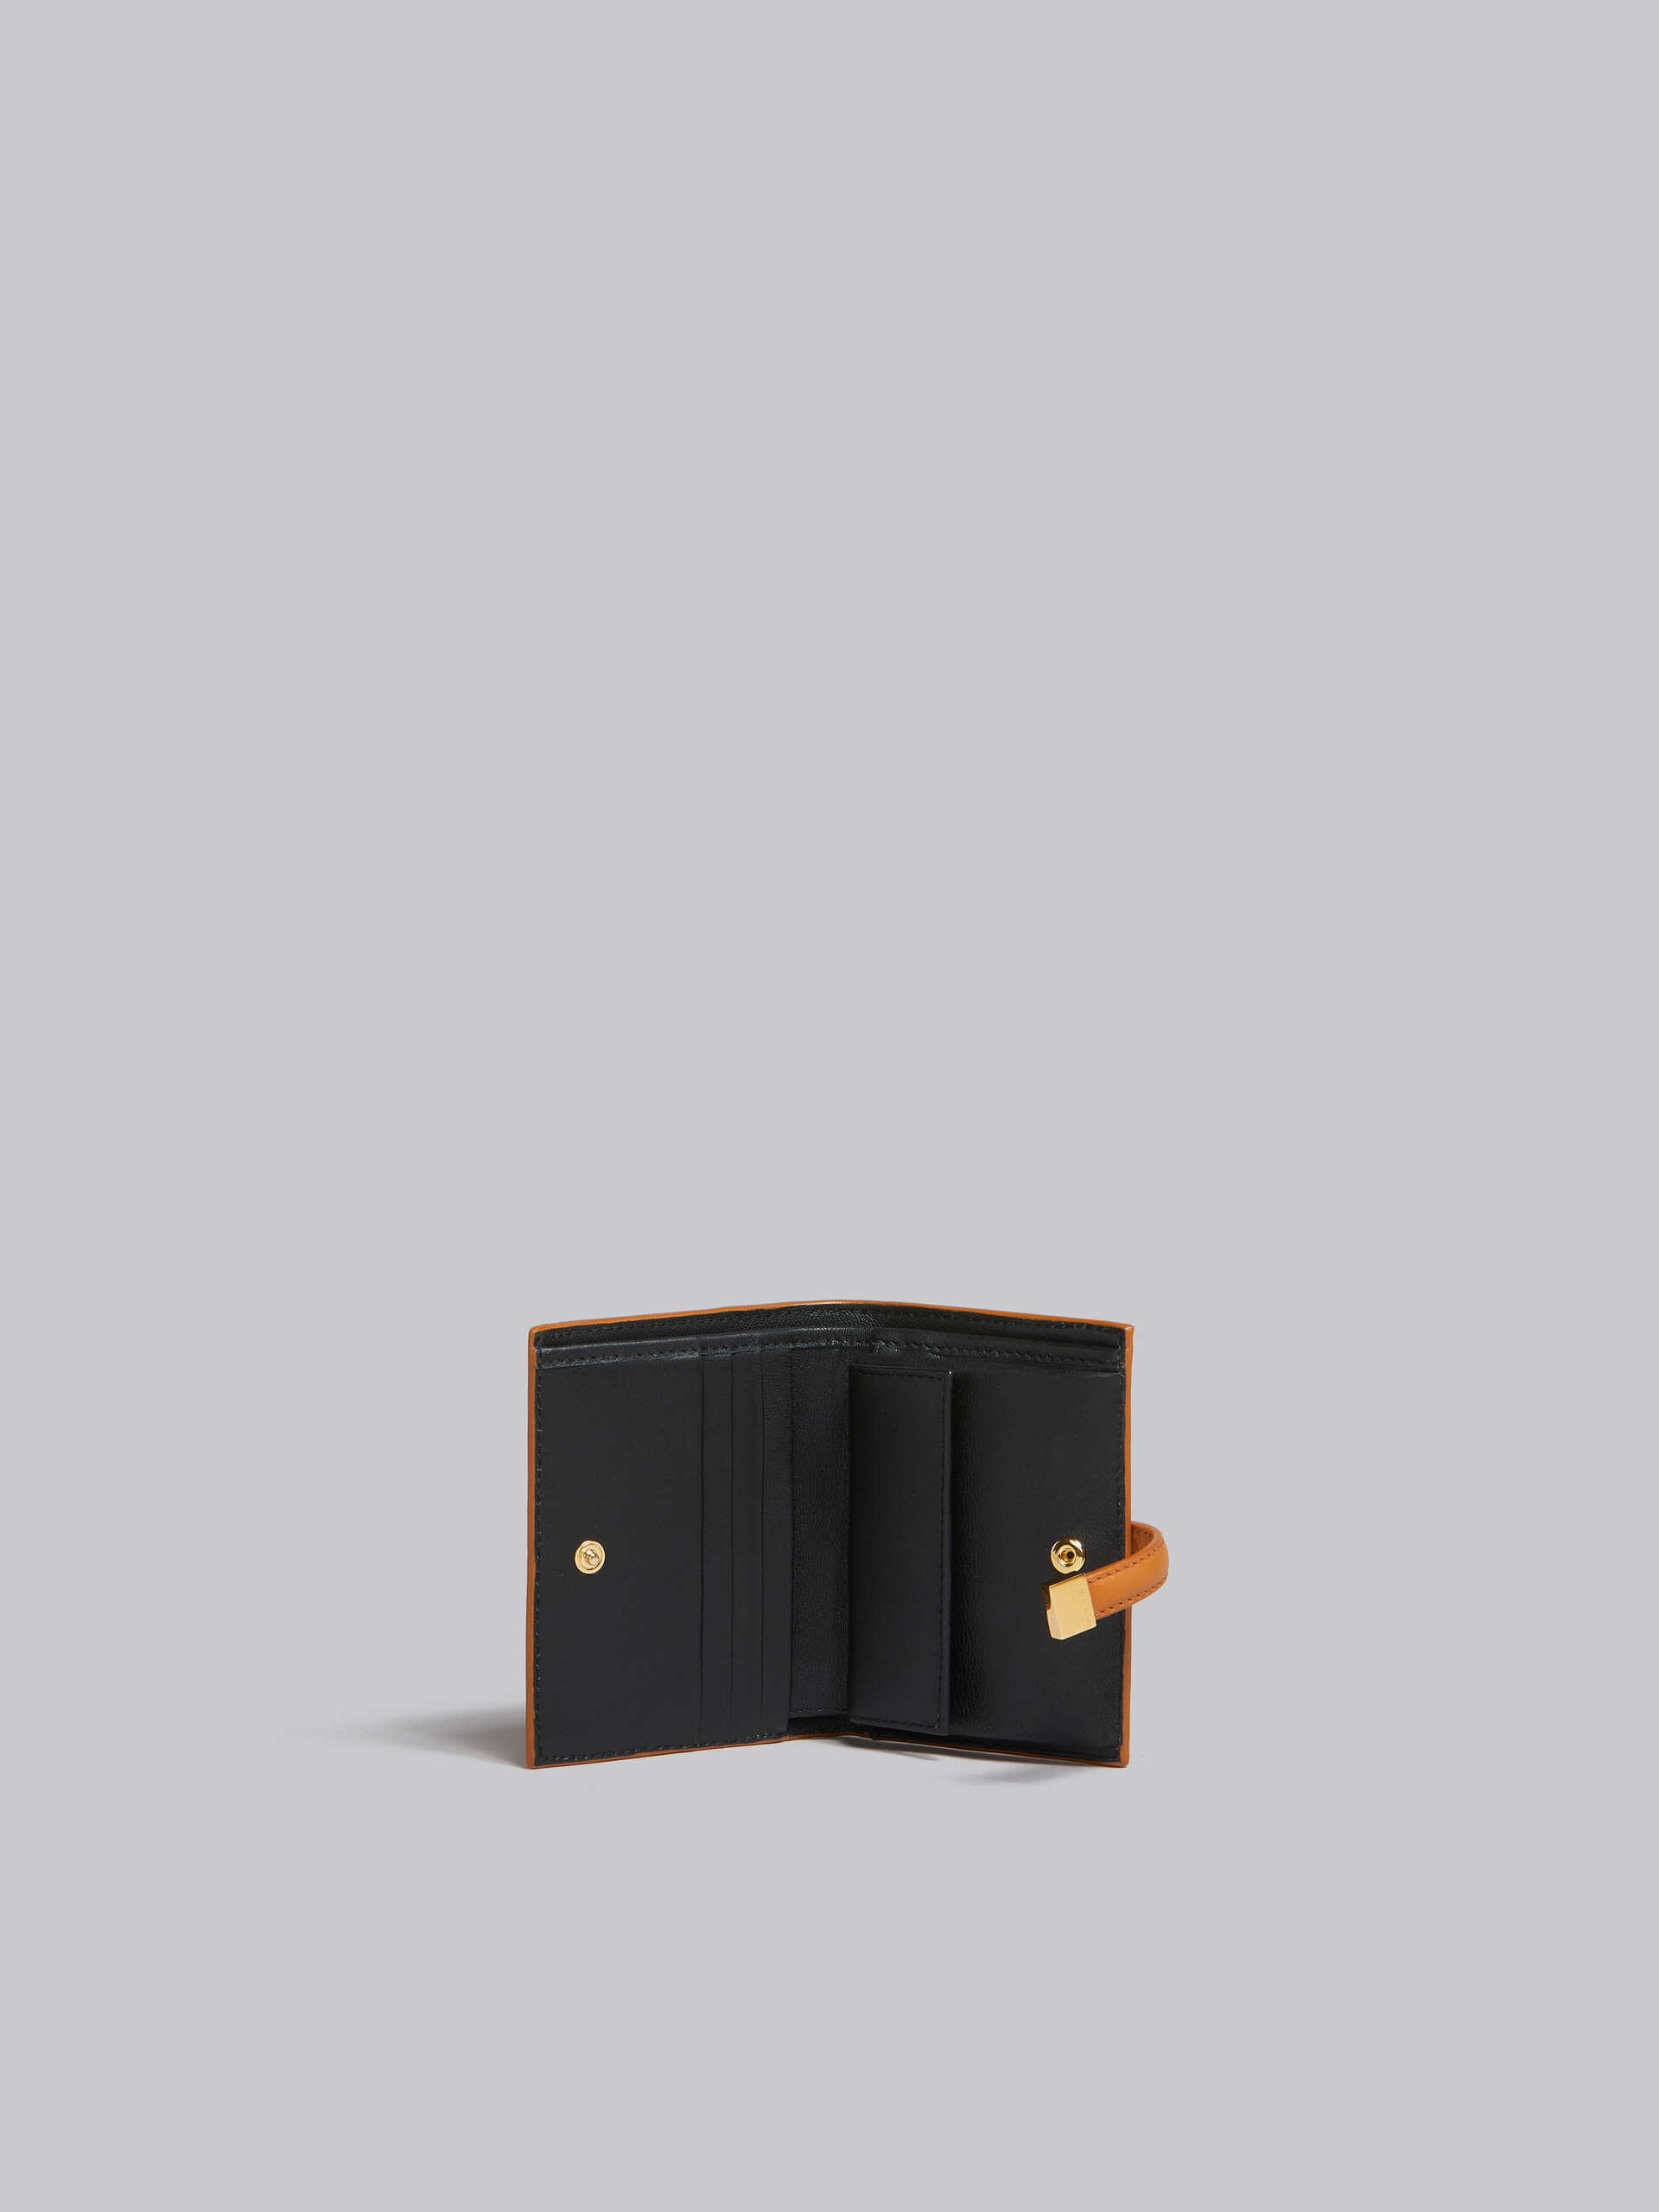 ブラック レザー製二つ折りPrisma ウォレット - 財布 - Image 2